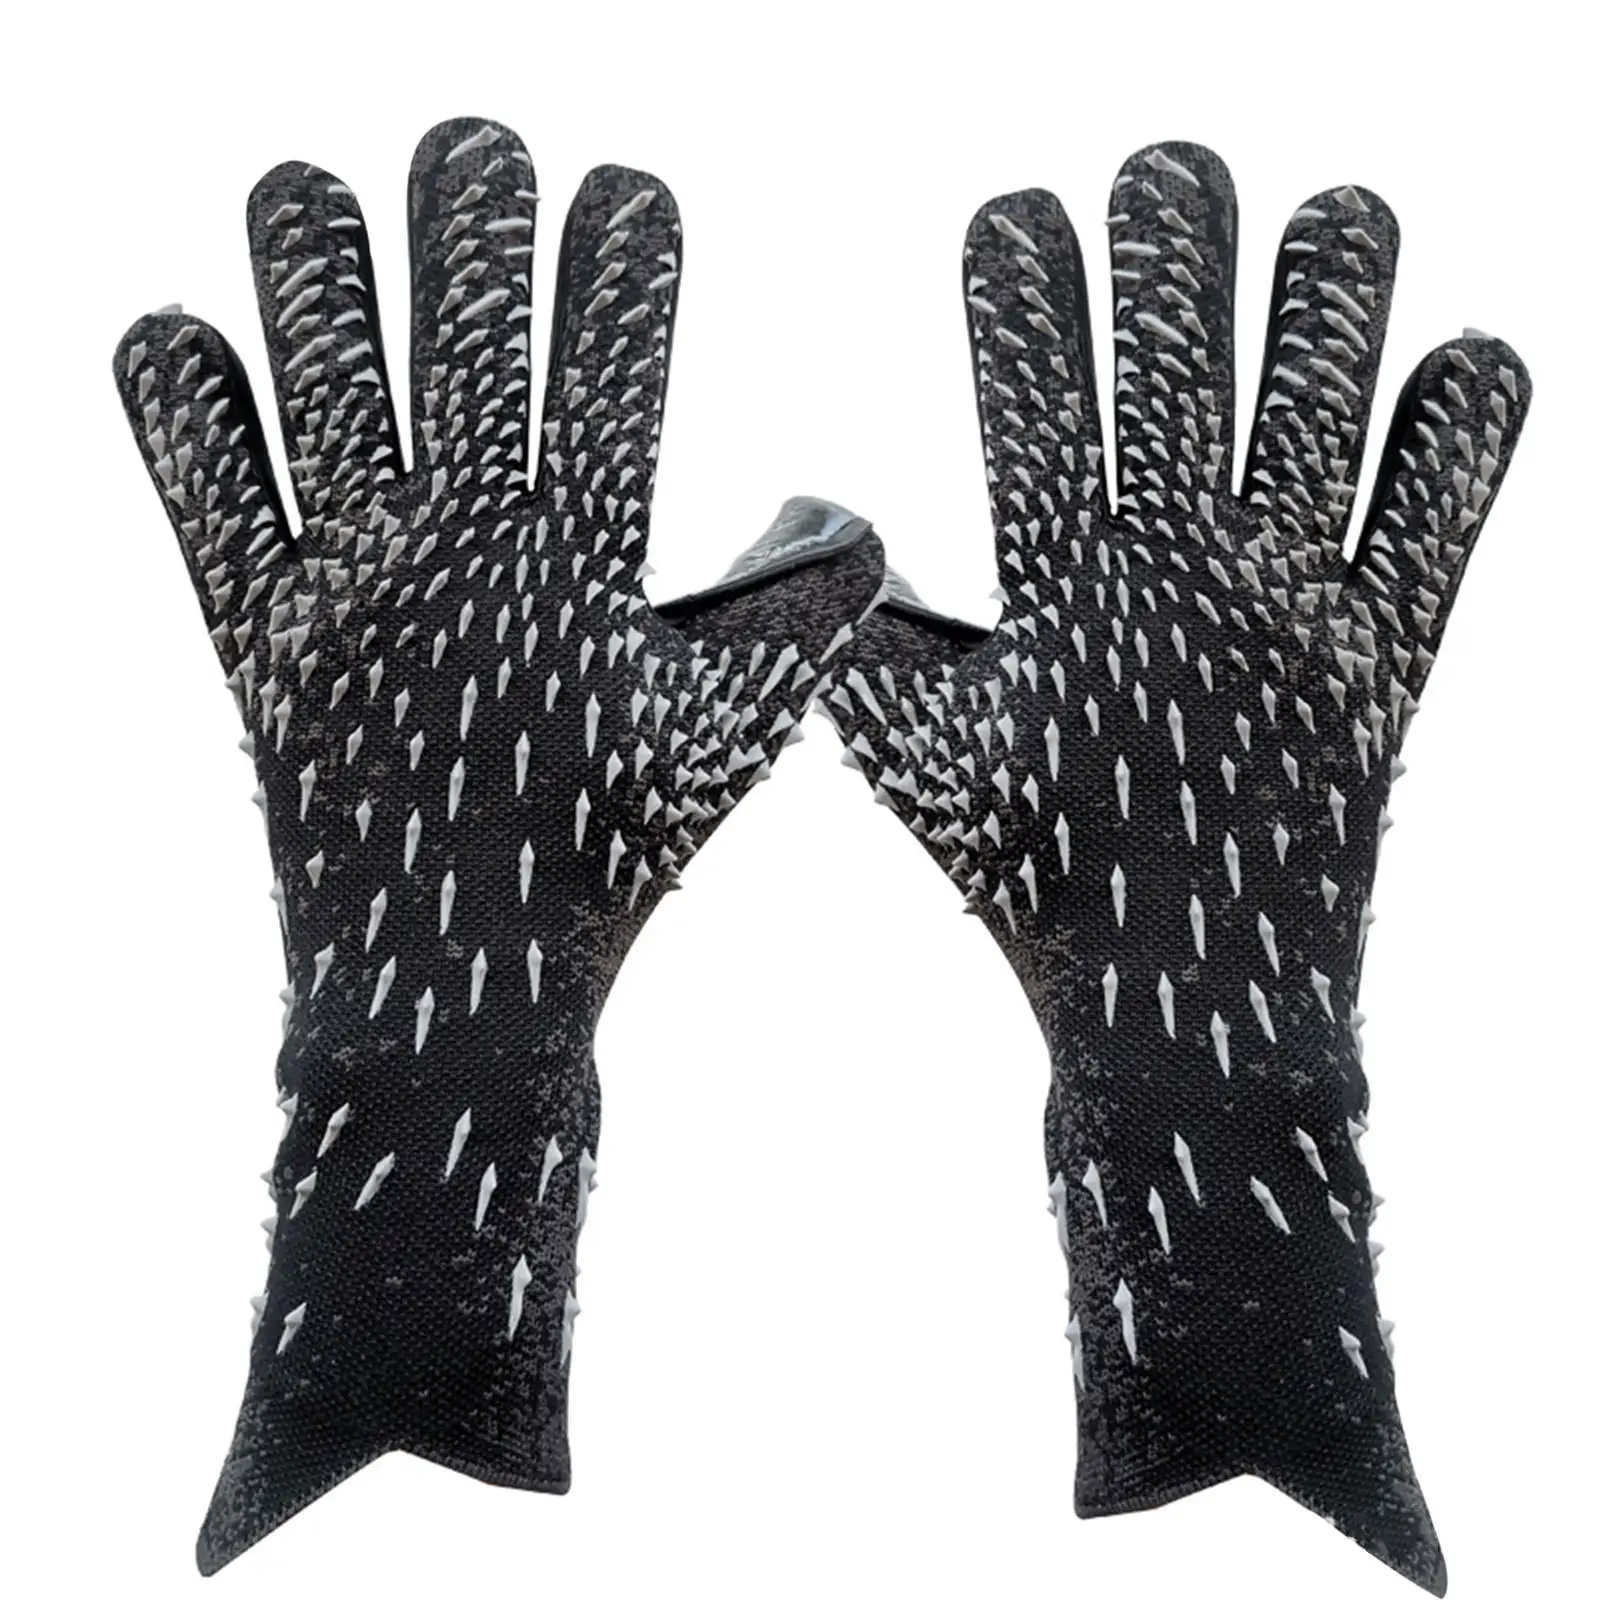 Wholesale Manufacturer Football Gloves Training Soccer Sports Best Goalkeeper Latex Gloves Soccer Gloves